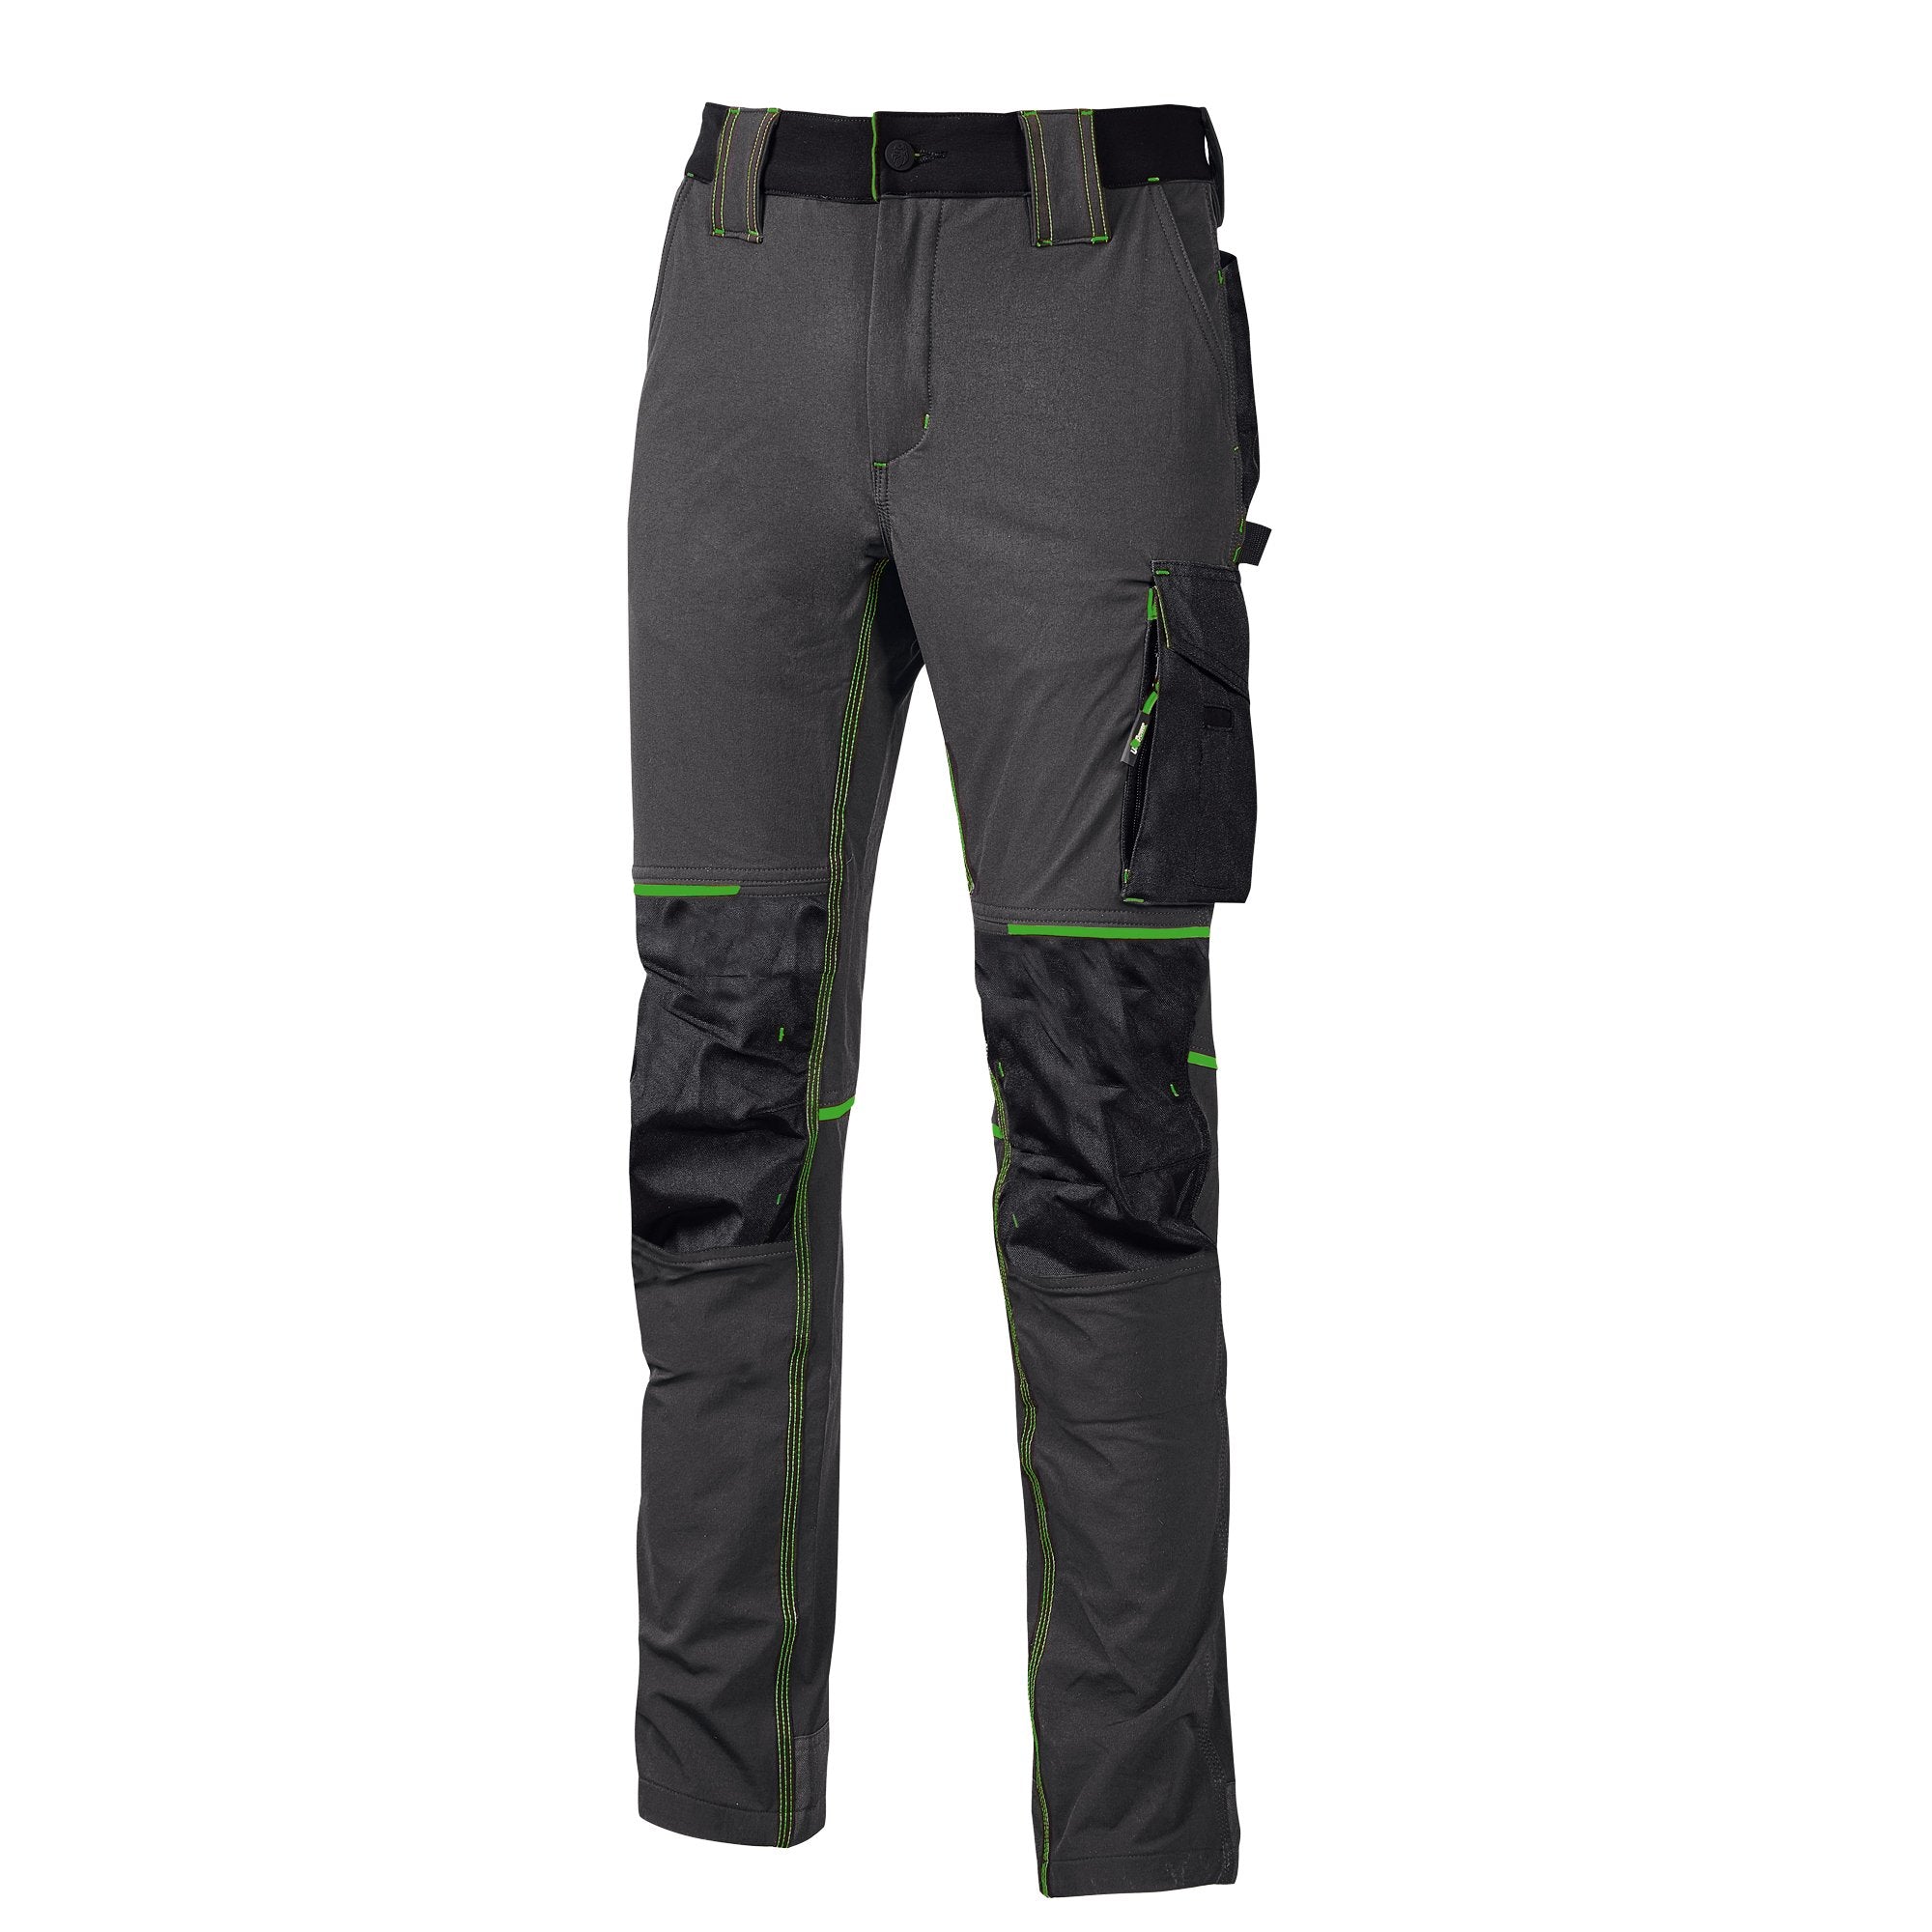 u-power-pantaloni-lavoro-atom-taglia-l-grigio-verde